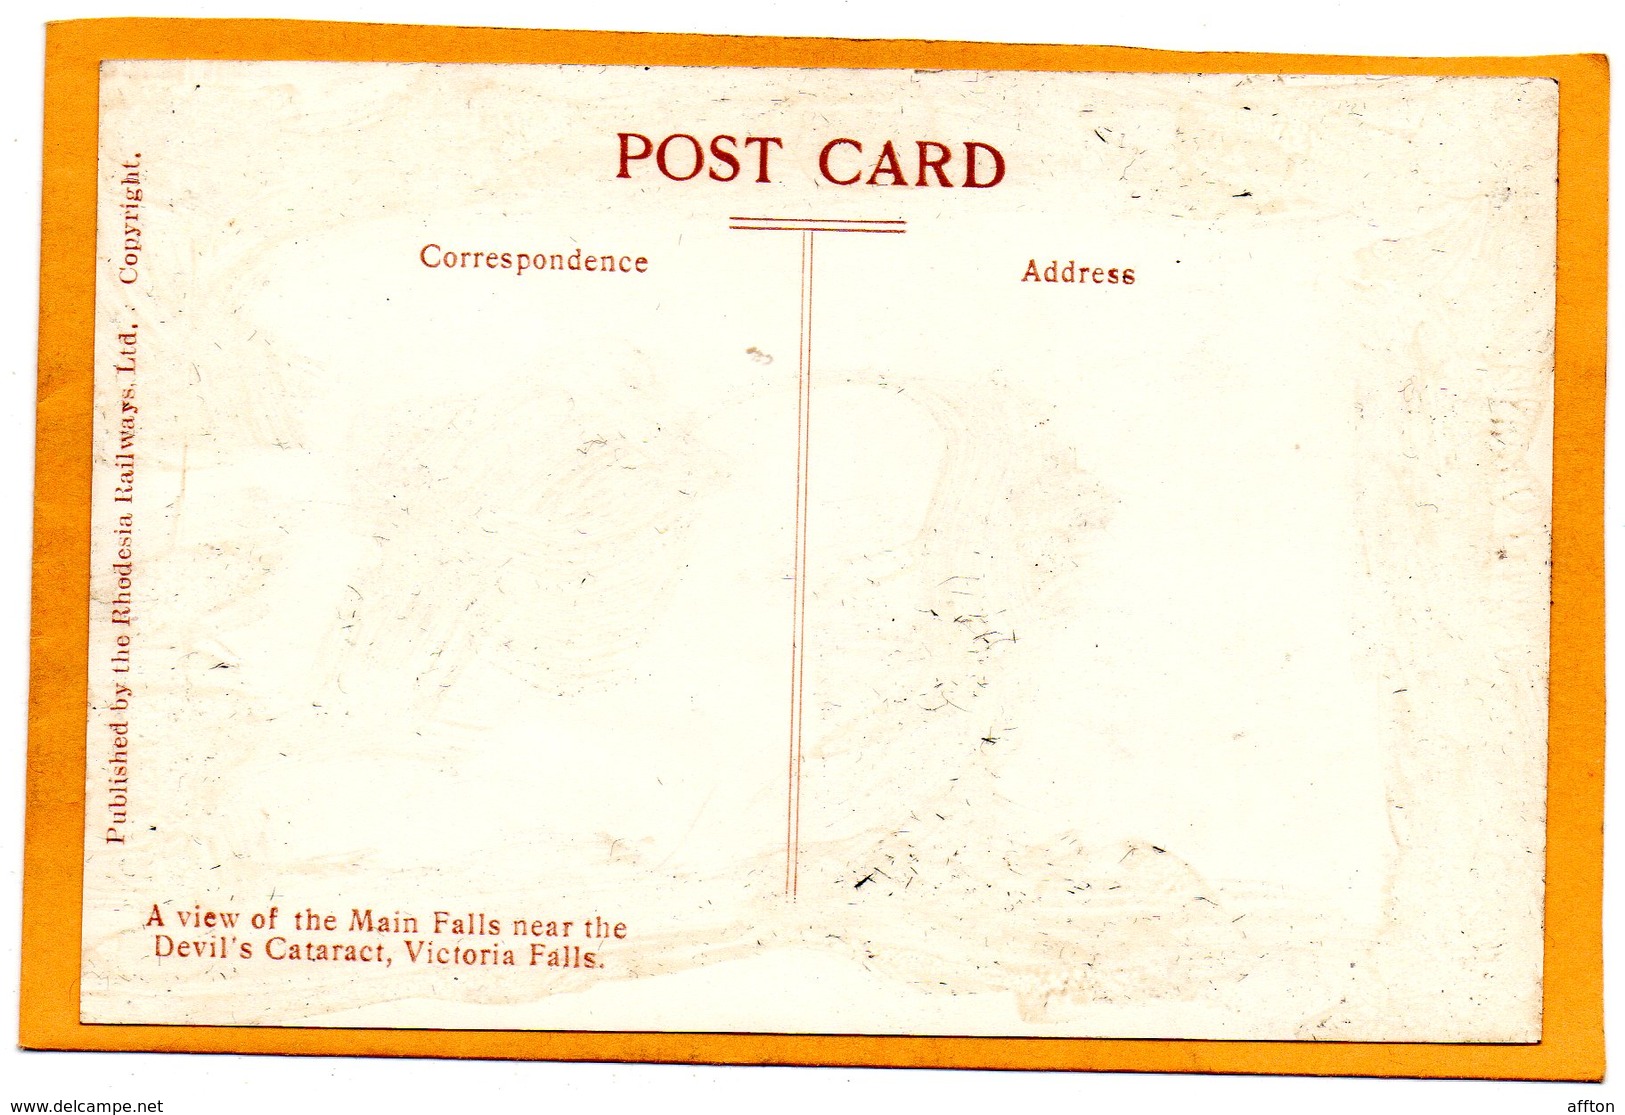 The Victoria Falls Zambia Old Postcard - Zambie